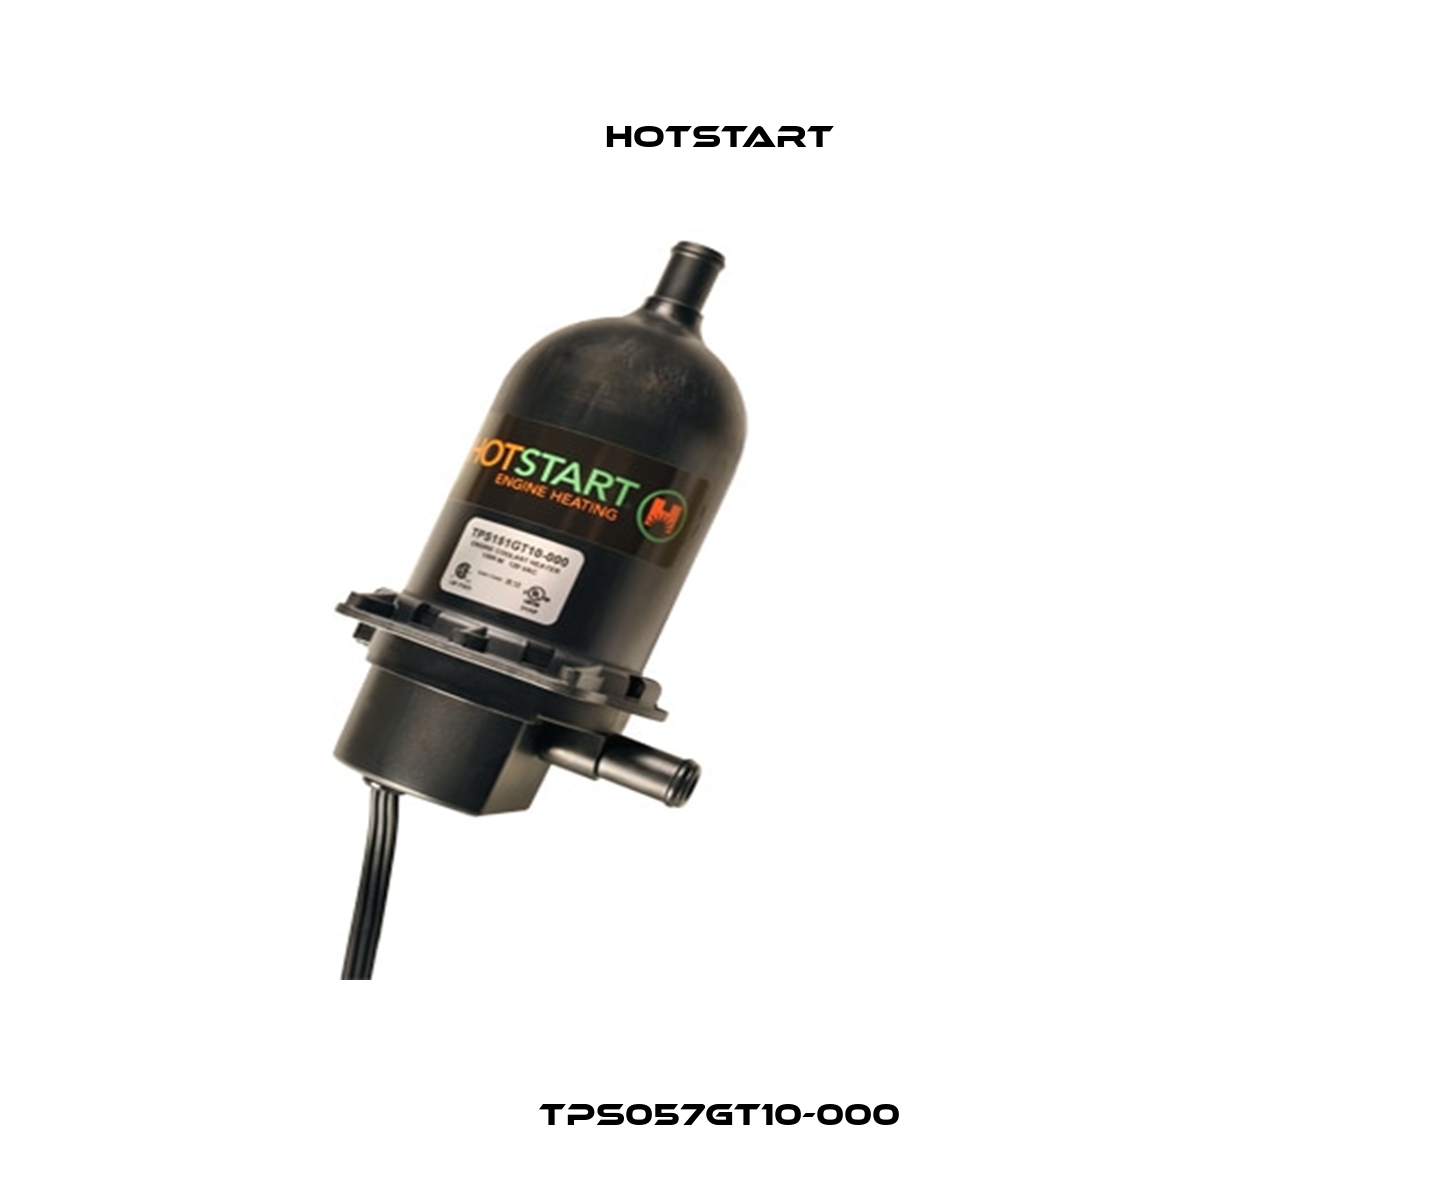 TPS057GT10-000 Hotstart